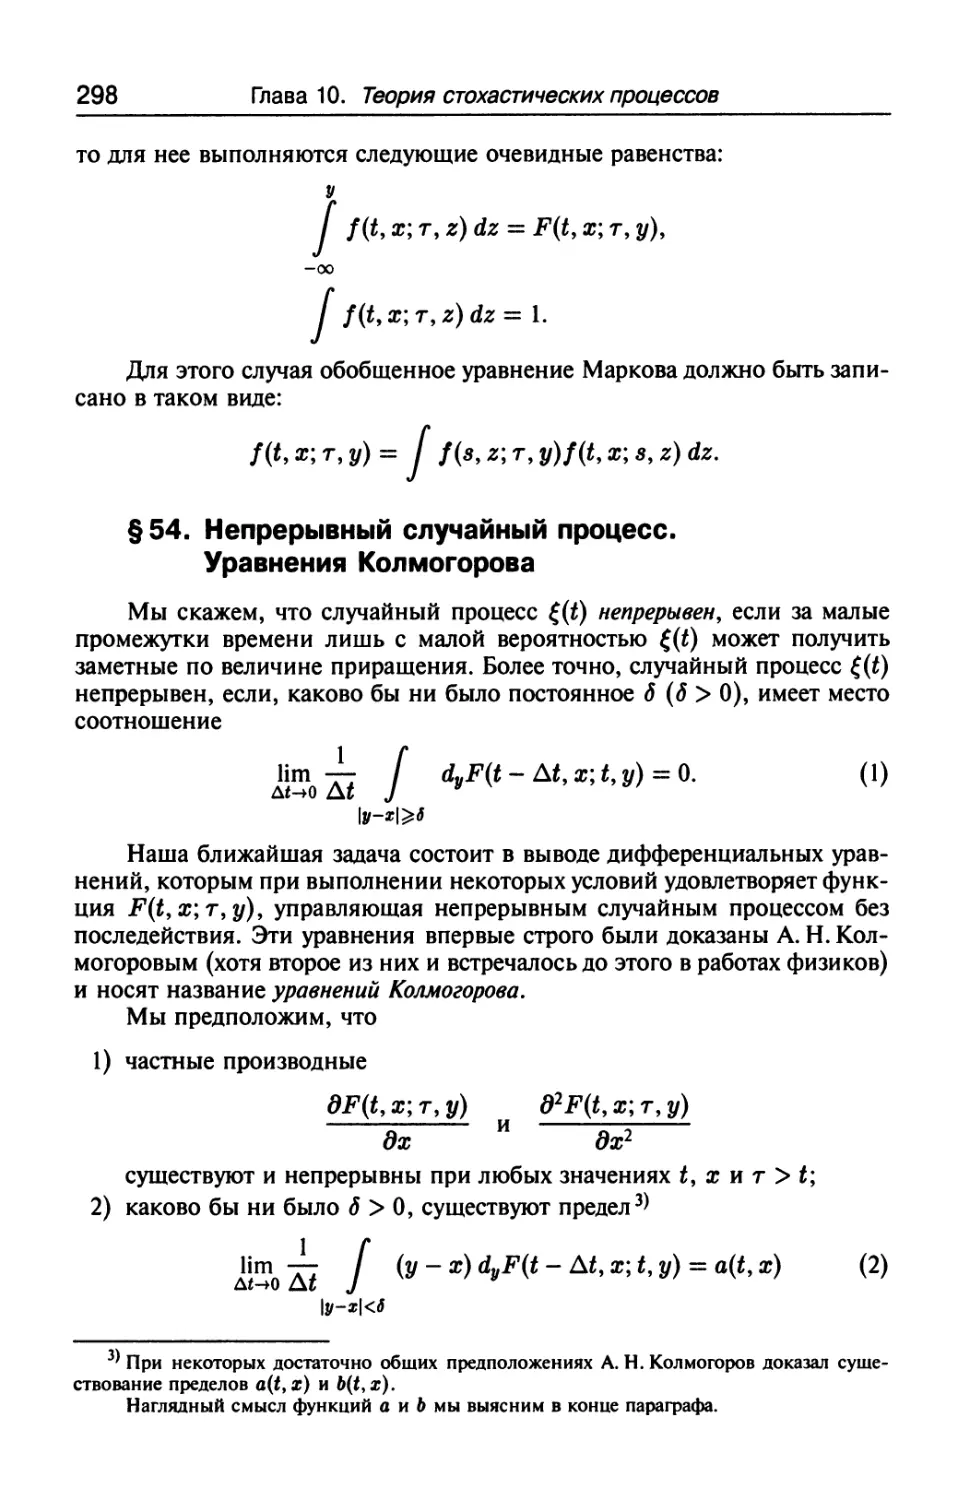 § 54. Непрерывный случайный процесс. Уравнения Колмогорова